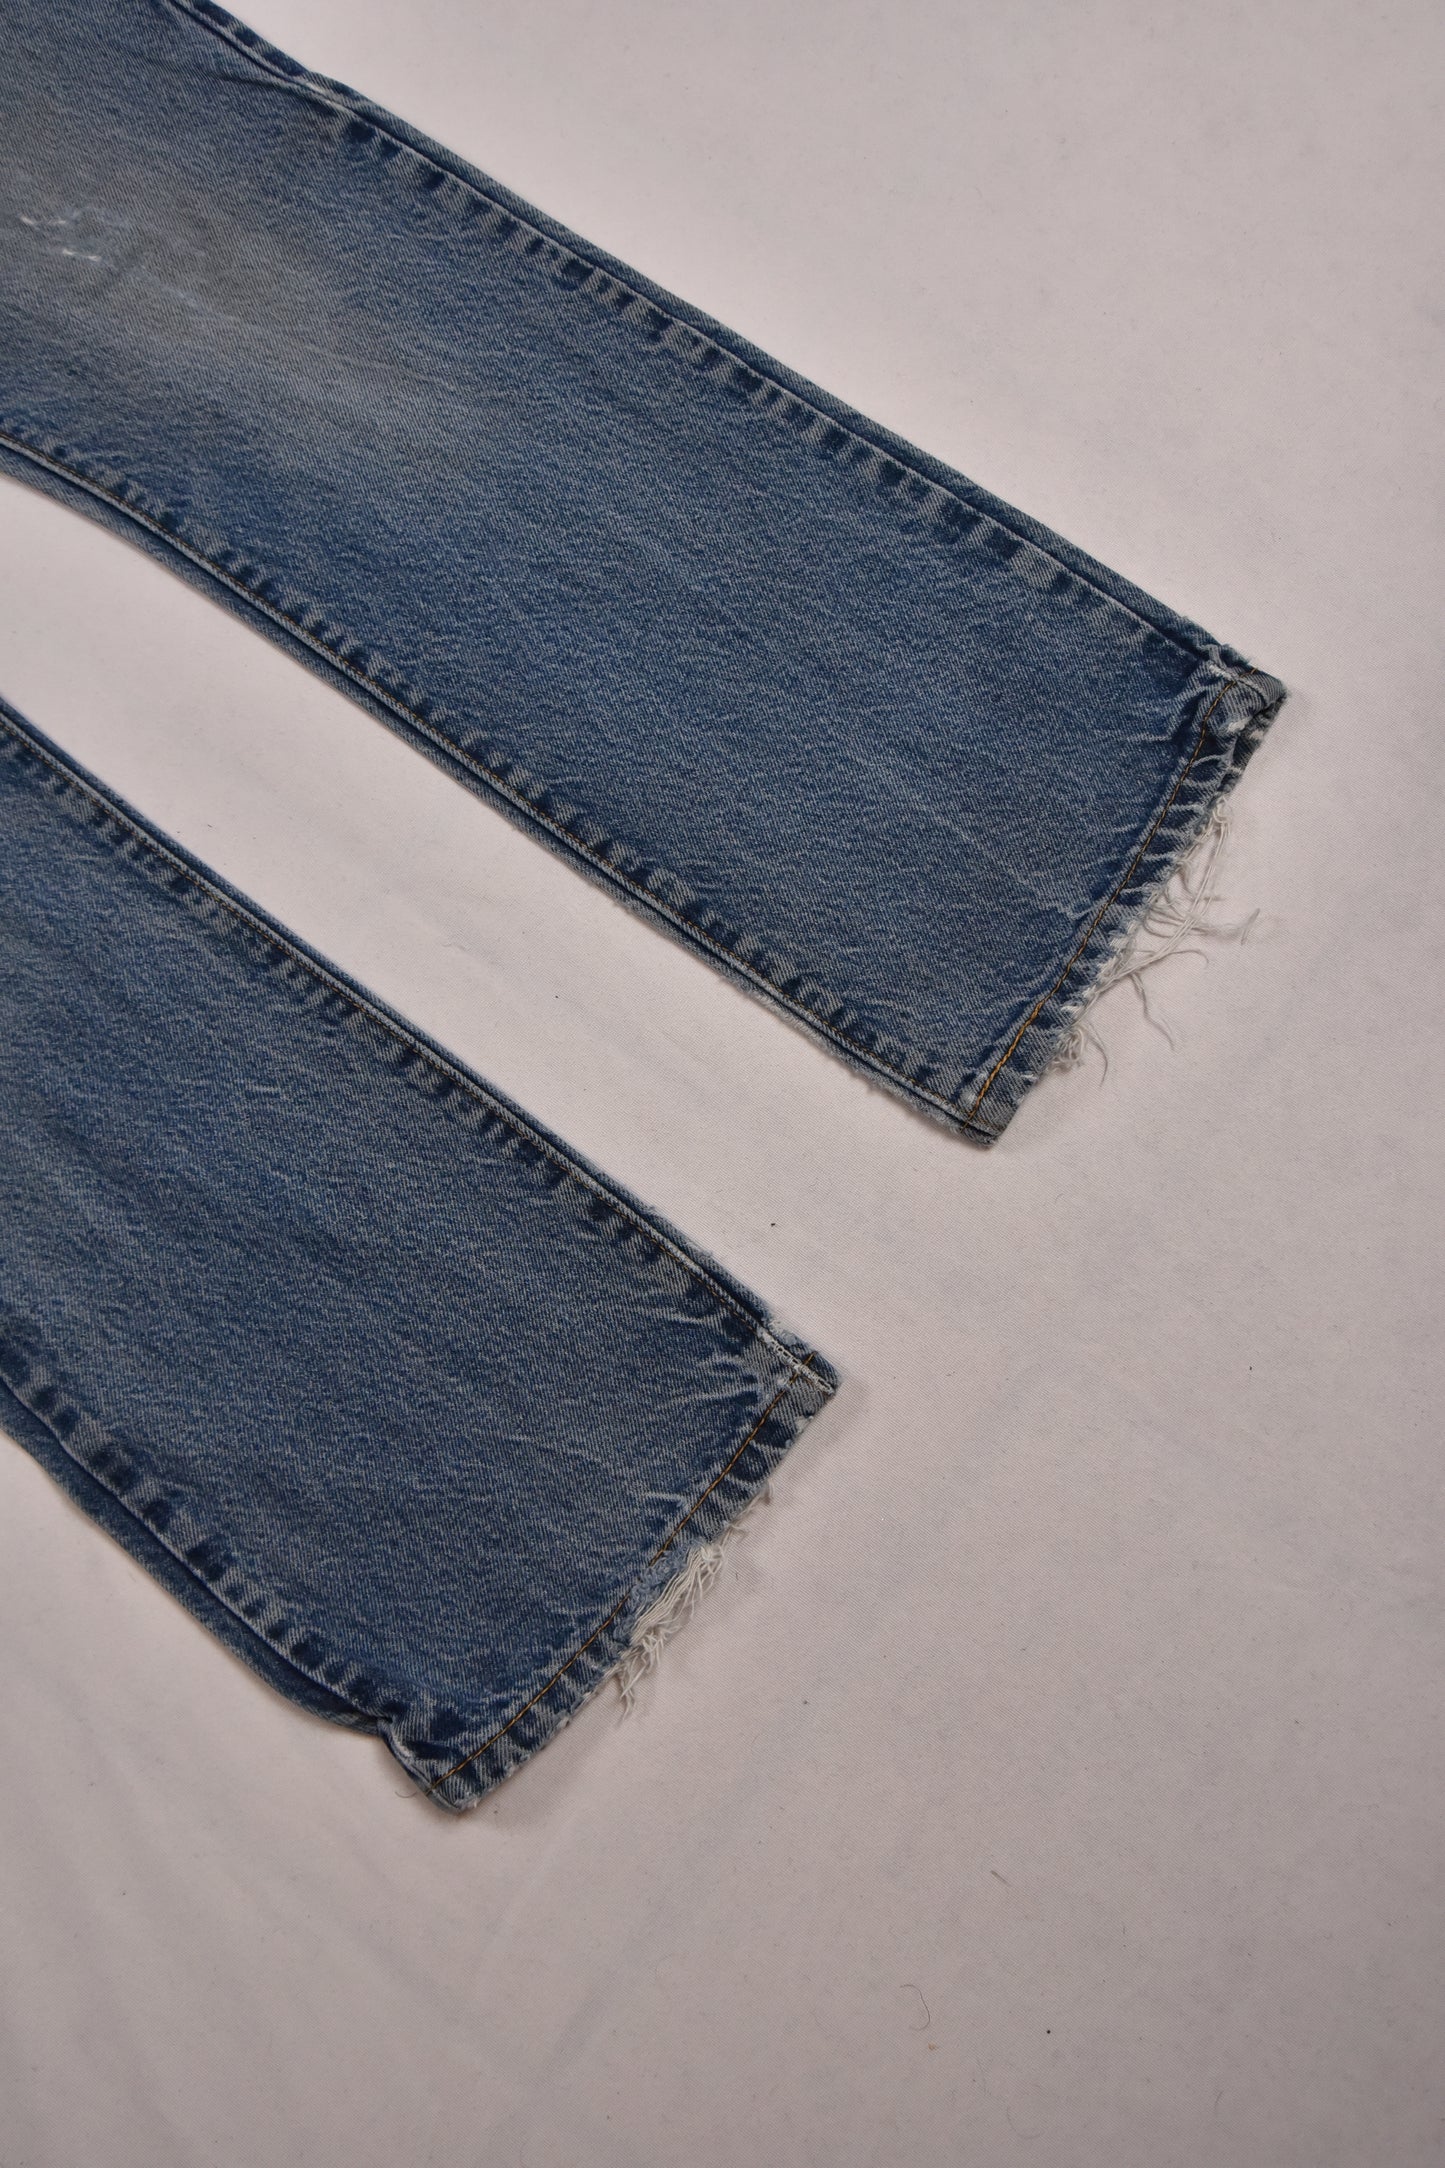 Jeans Levi's 517 Vintage / 31x30